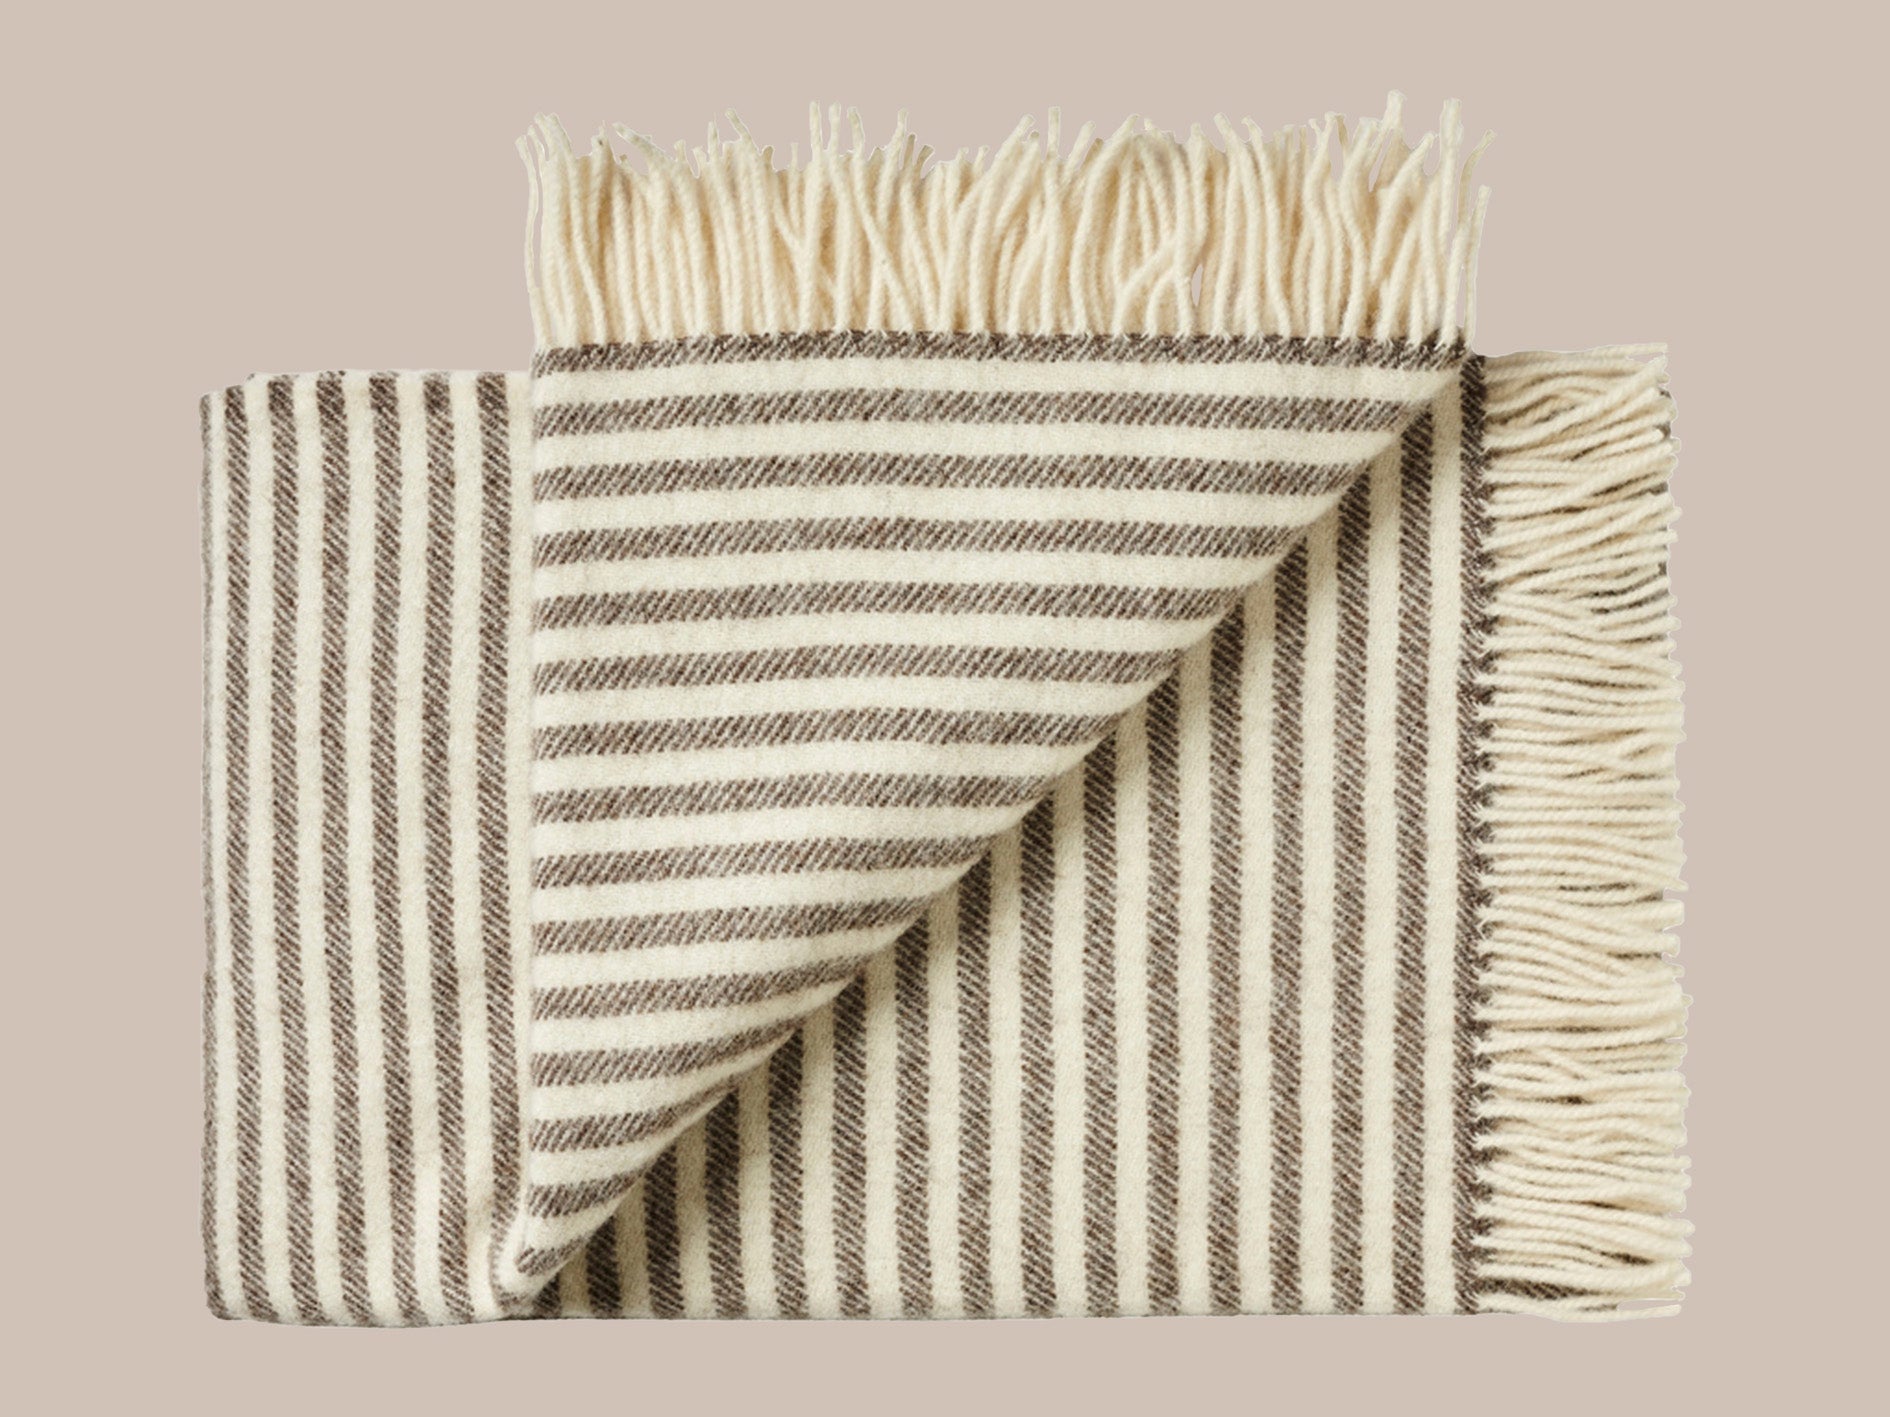 Uldplaid med frynser i skandinavisk uld i de smukkeste naturlige farver og mønstre. Et varmt bæredygtigt uldtæppe til dig , der elsker at varme dig med et tæppe.. Dette tæppe er i et smukt afstemt mønster i nougat farvet og lys beige. Mønstret er 50 cm stribet i hver ende og ensfarvet nougat i midten af tæppet. Frynserne er lys beige.